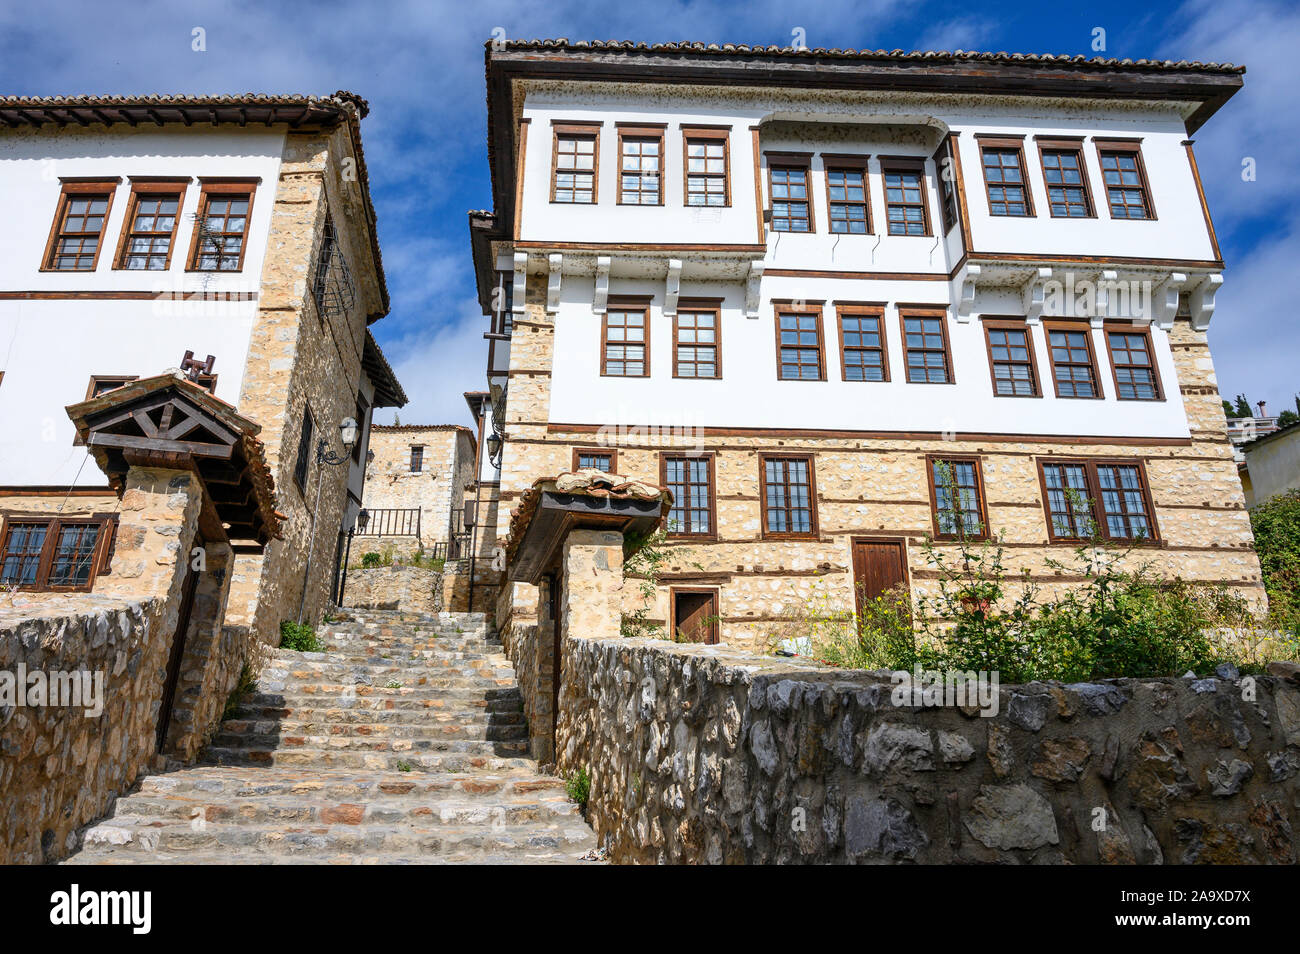 Vieux manoirs ottomans et les rues pavées du vieux quartier Doltso de Kastoria, la Macédoine, la Grèce du Nord. Banque D'Images